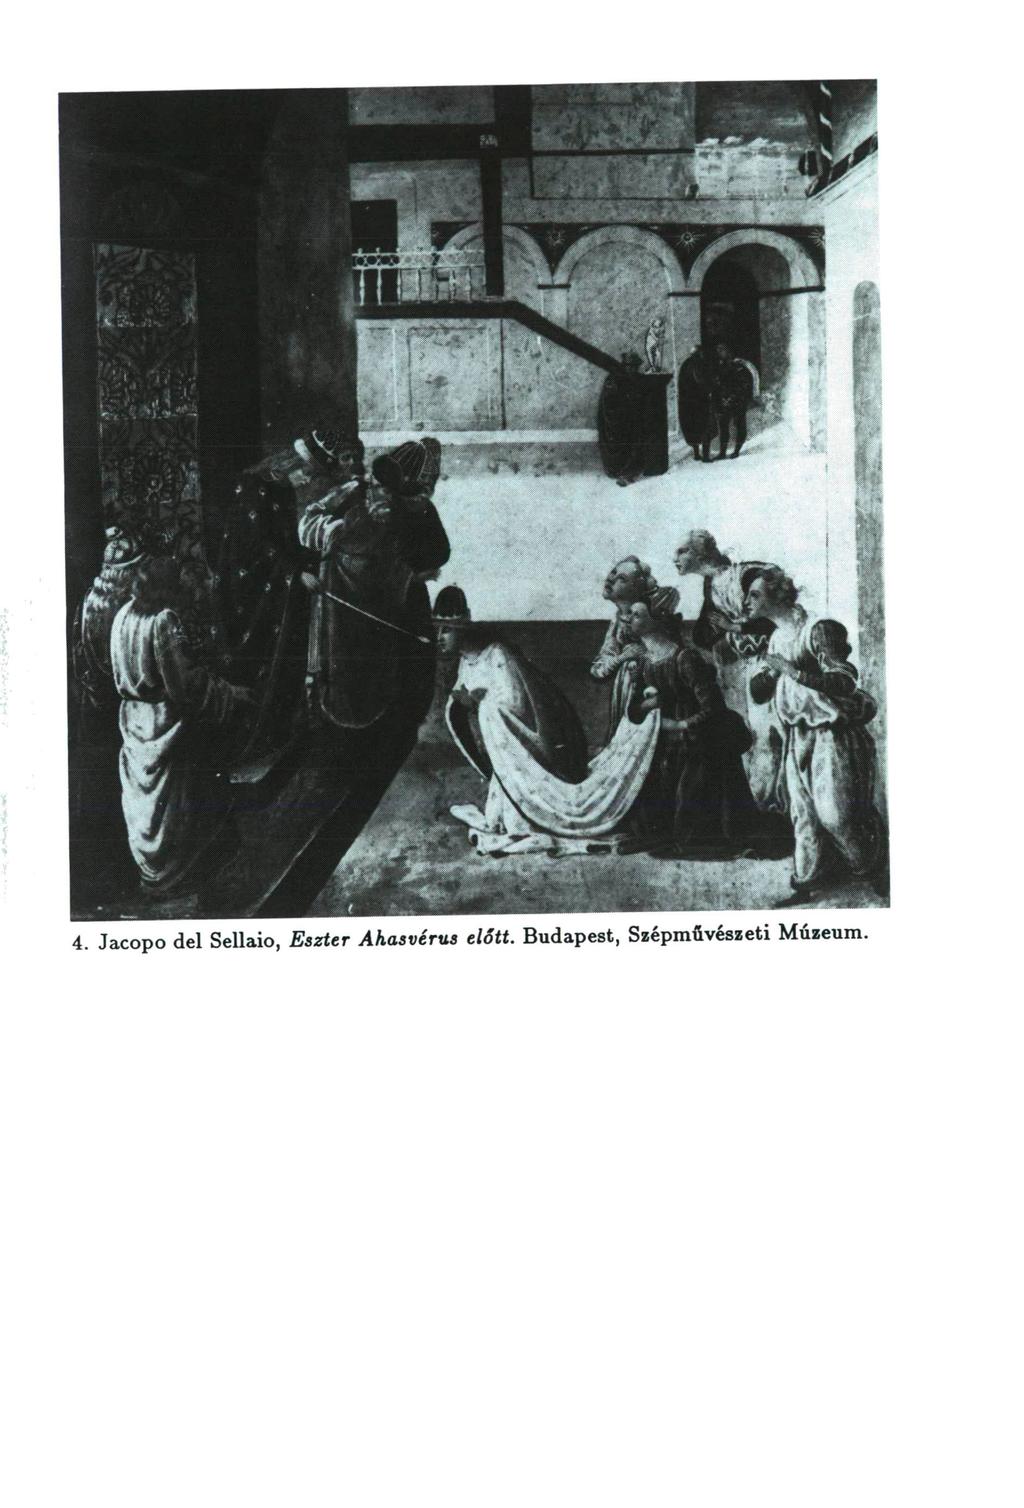 4. Jacopo del Sellaio, Eszter